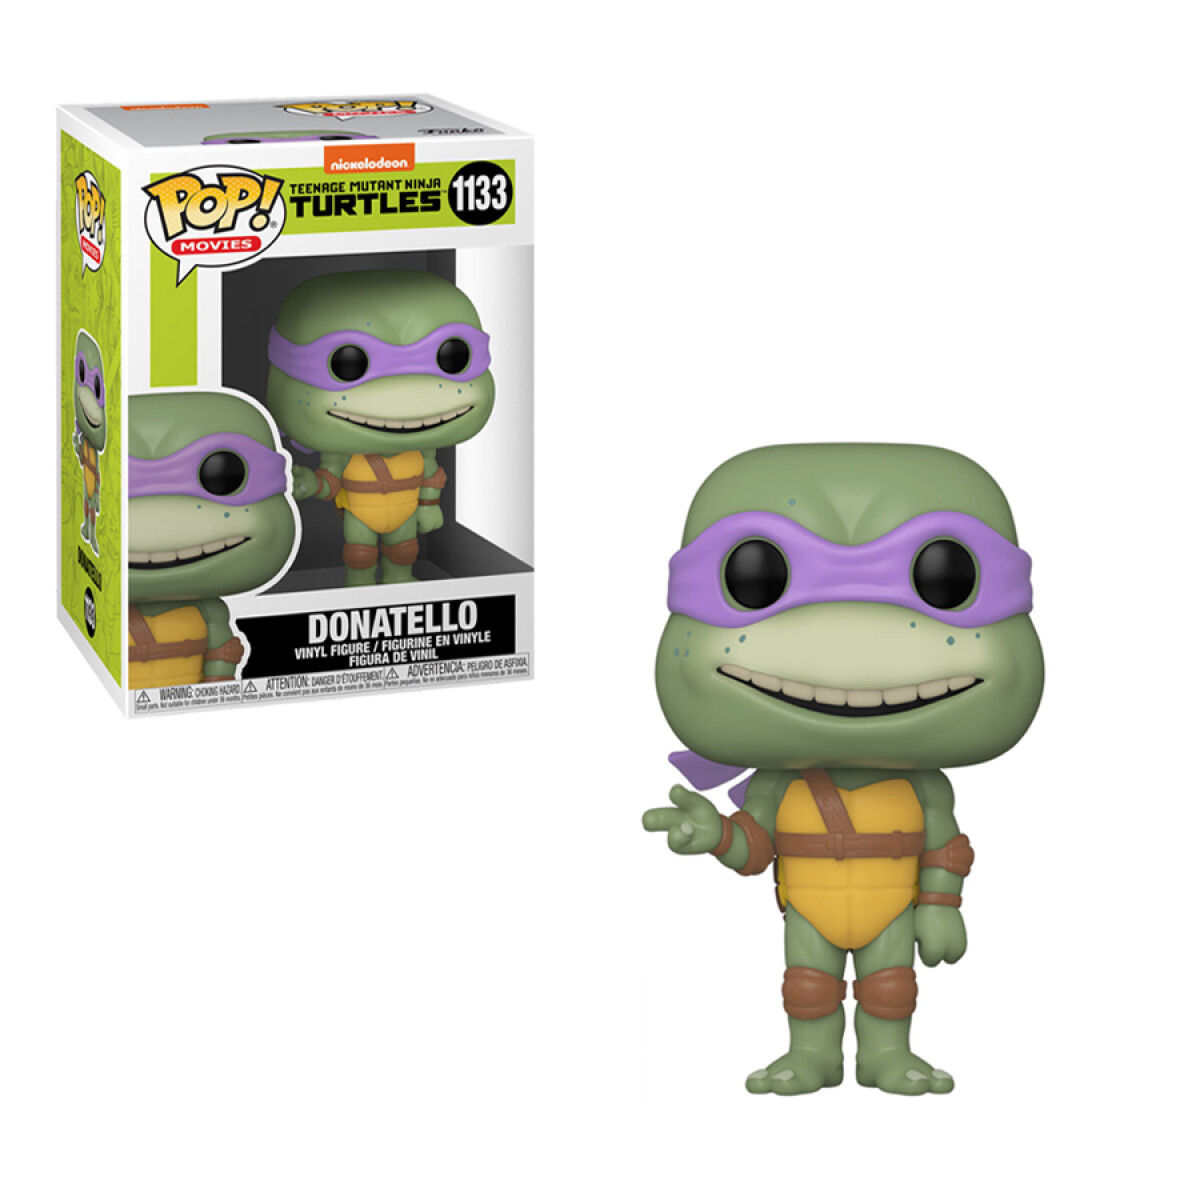 Donatello • Teenage Mutant Ninja Turtles 2 - 1133 